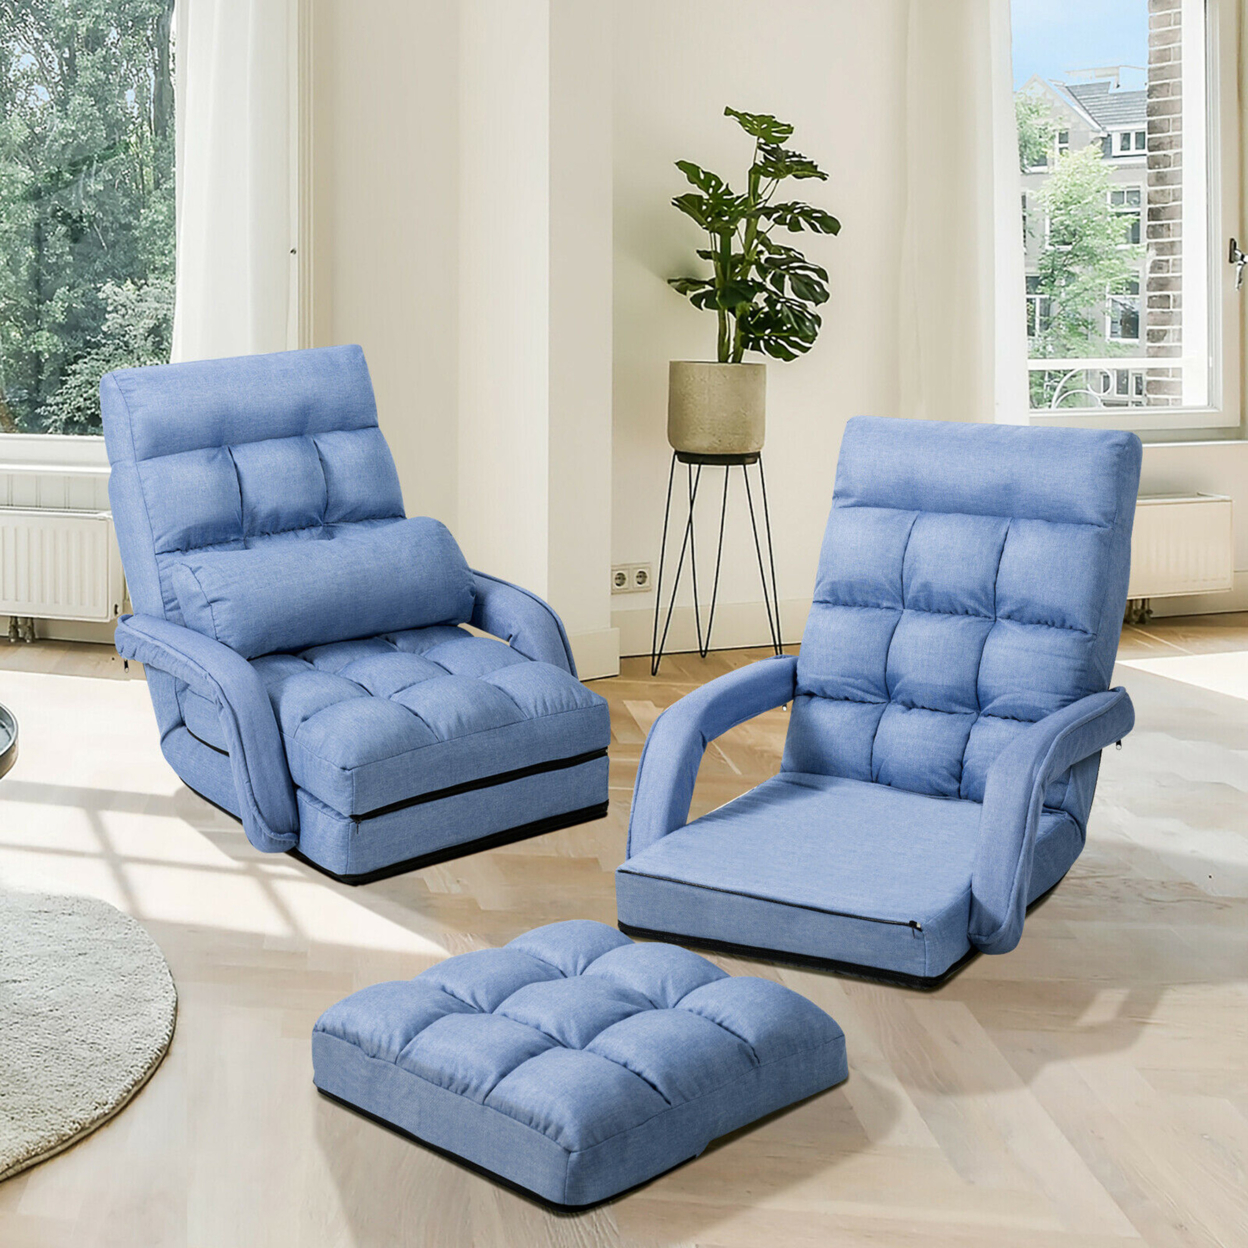 Folding Floor Chair Adjustable Armchair Chaise Lounge Chair Lazy Sofa - Blue